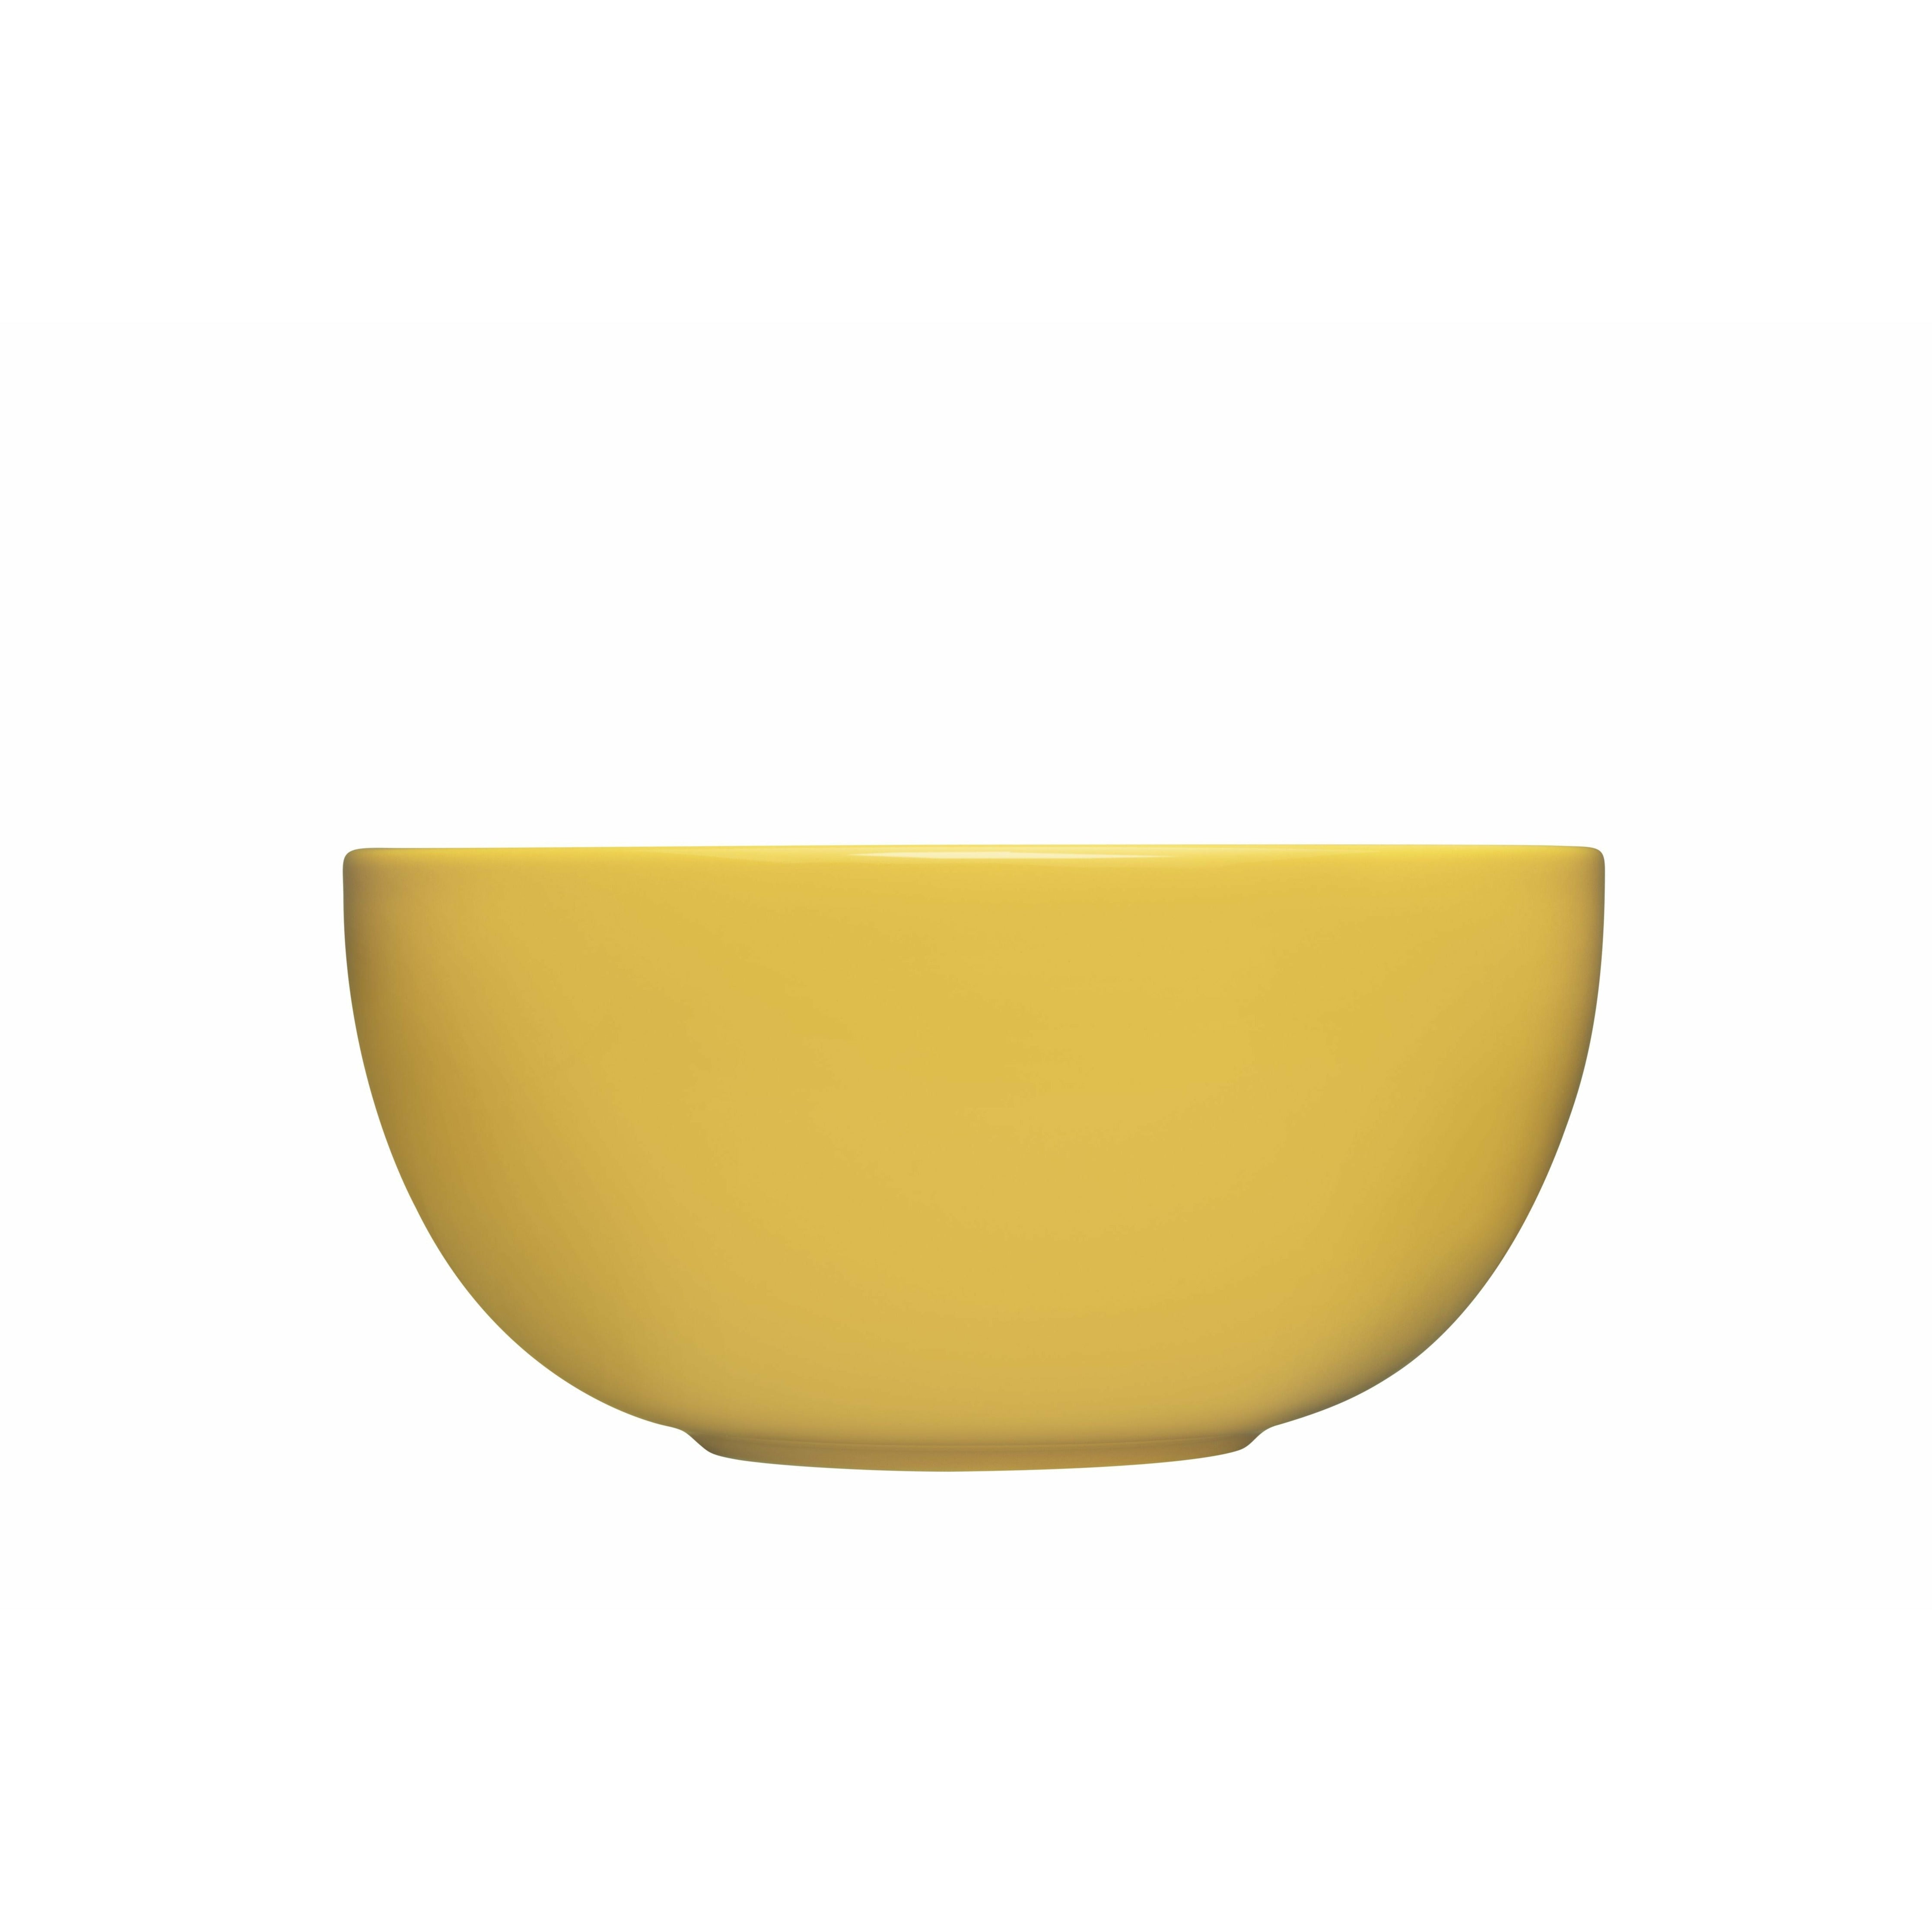 Iittala Teema Bowl 3,4 L, Honing Yellow